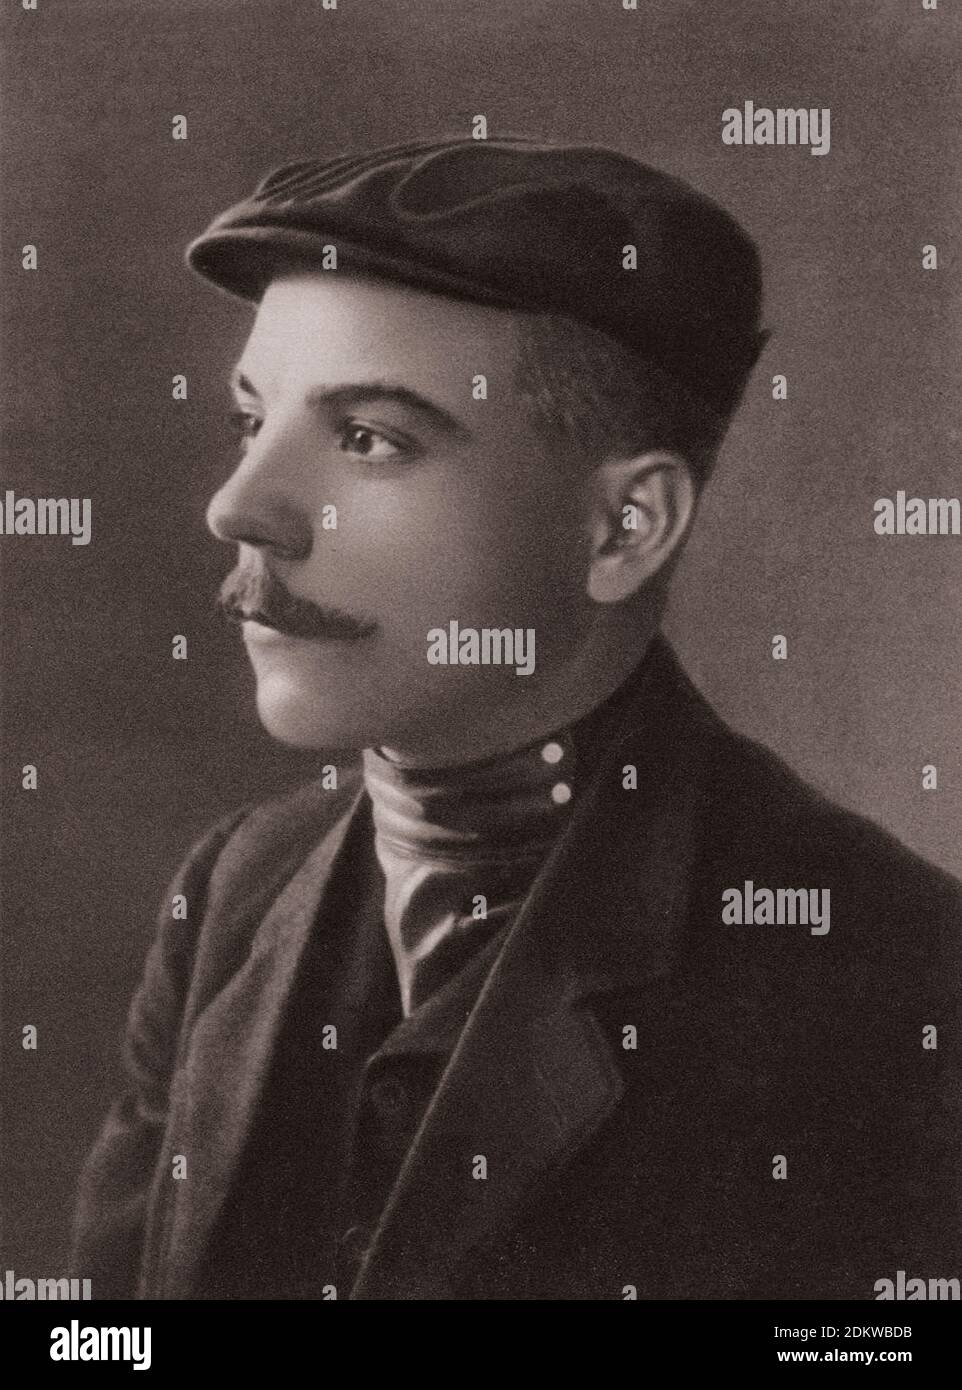 Archivfoto des jungen Klim Woroshilov. Russisches Reich. 1906 Klim Woroshilov (1881 – 1969), war ein prominenter sowjetischer Militäroffizier und Politiker du Stockfoto